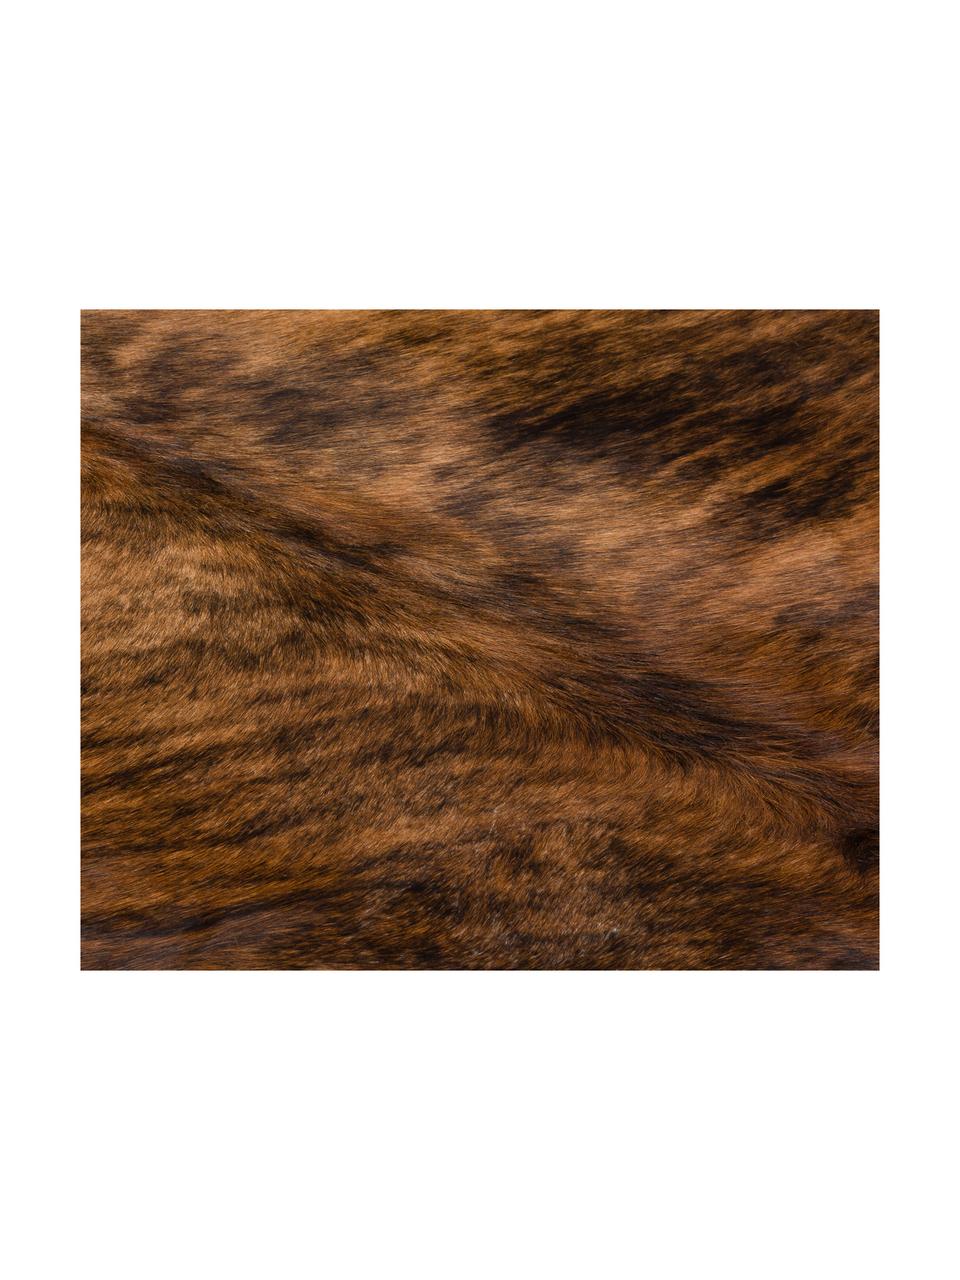 Tappeto in pelle di mucca Leo, Pelle di mucca, Marrone, sgombro, Pelle di mucca unica 935, 160 x 180 cm